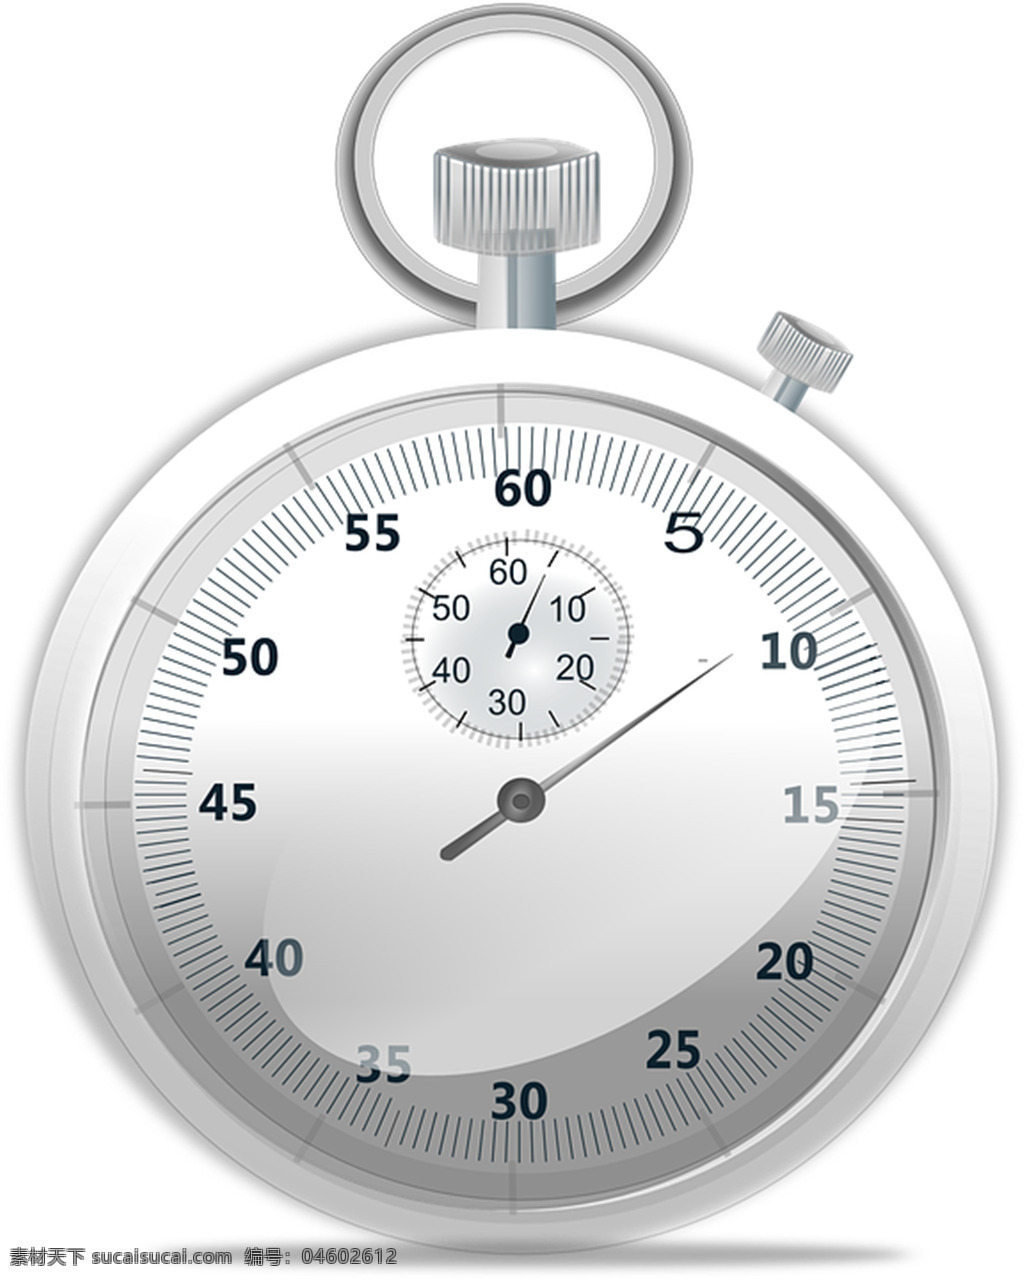 矢量秒表 秒表 秒表矢量 时钟 矢量素材 闹钟